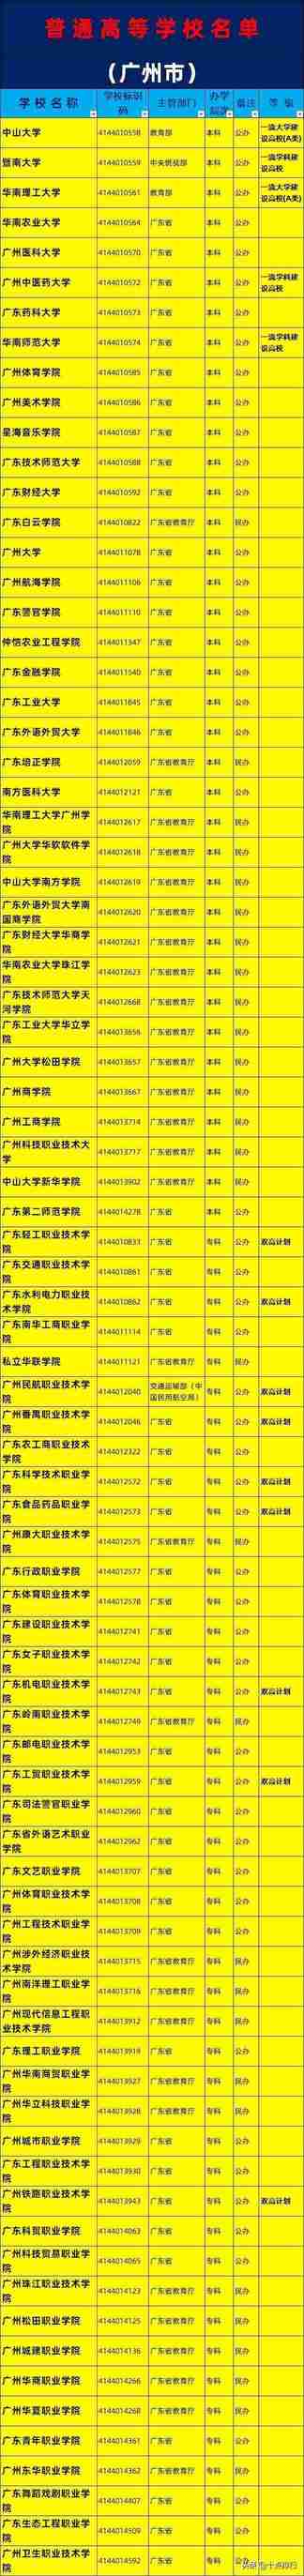 2019年广州市大学名单一览，了解广州有哪些大学高校